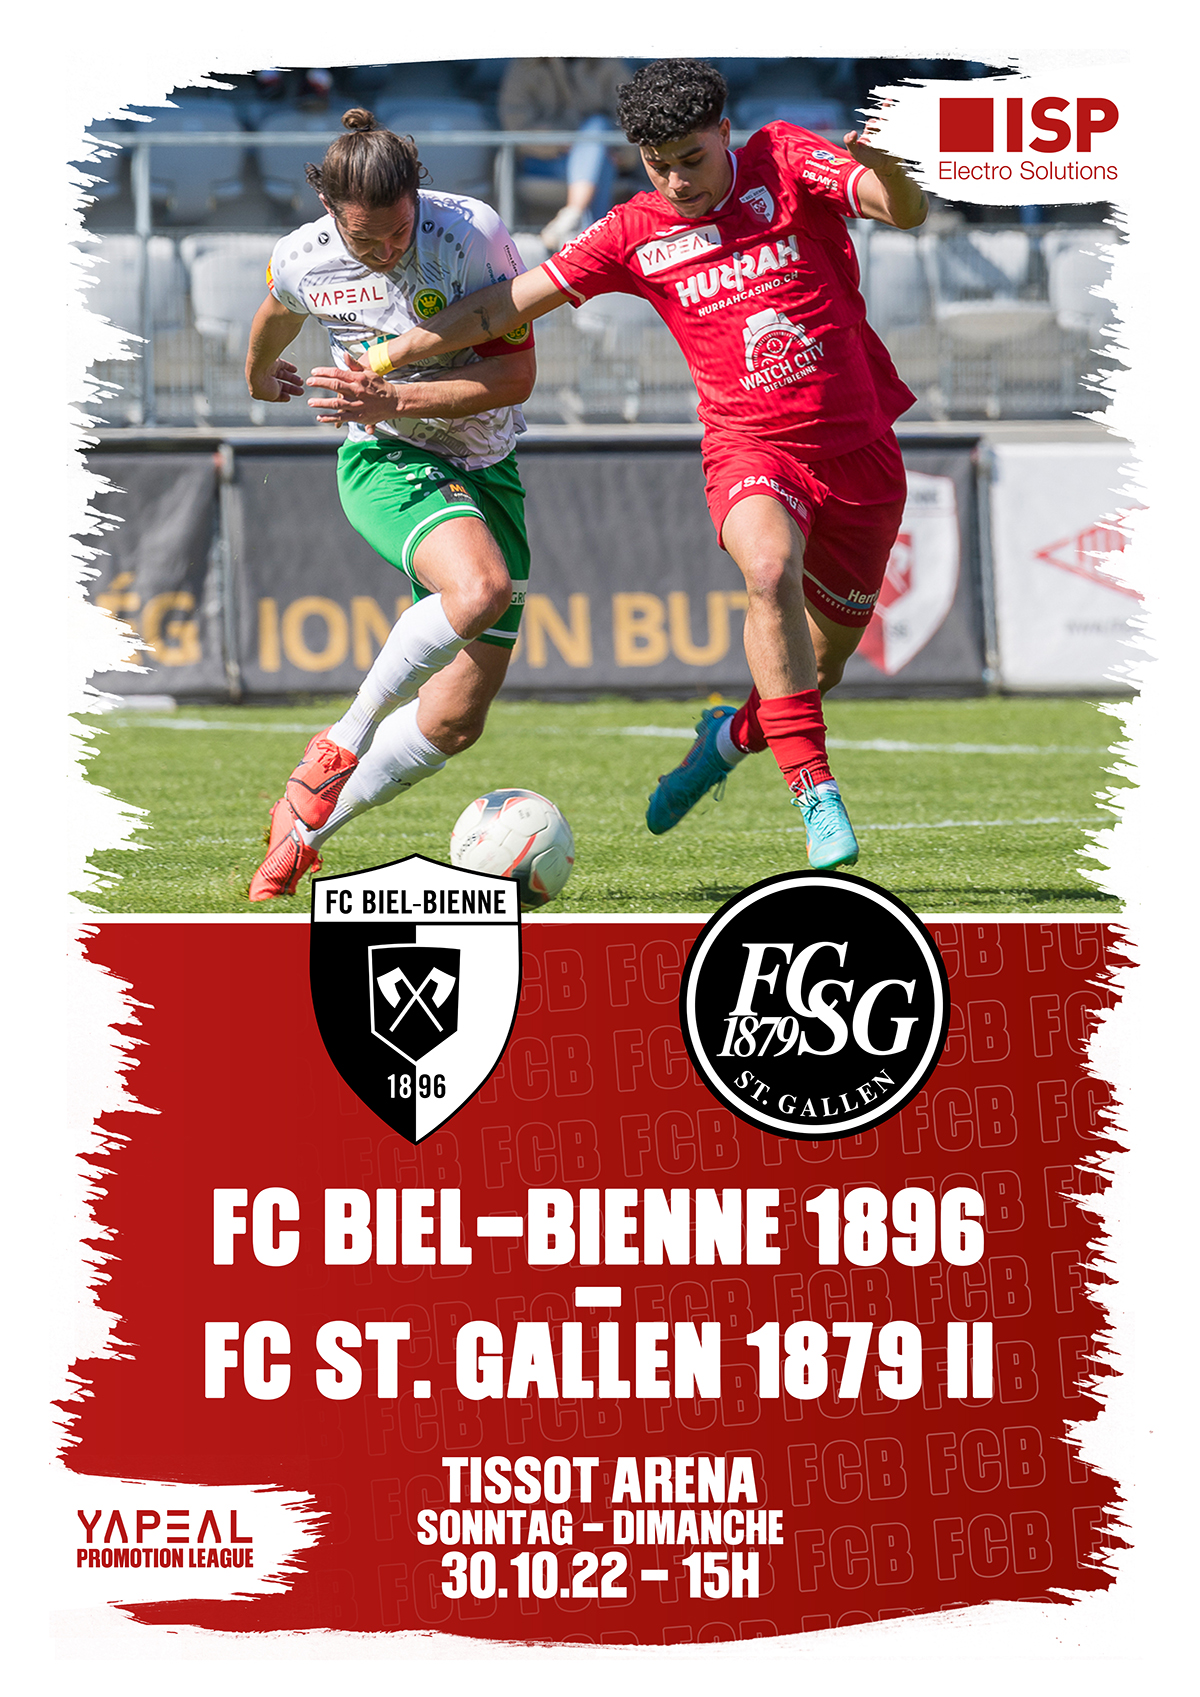 FC Biel-Bienne 1896 vs. FC St. Gallen 1879 II